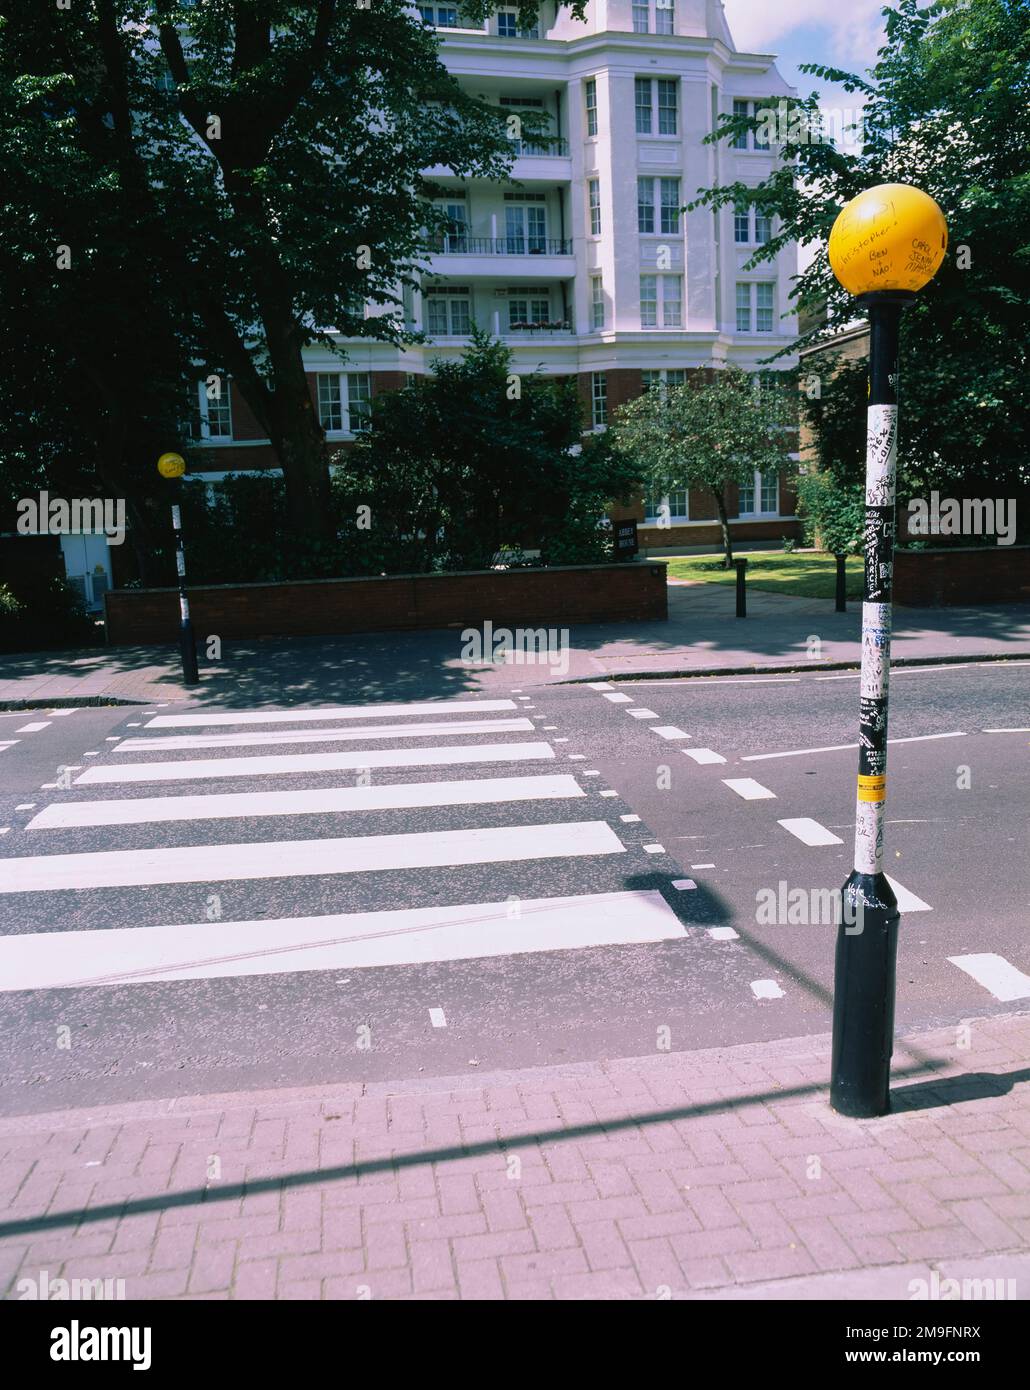 Lampadaire à une route, Abbey Road, Londres, Angleterre Banque D'Images